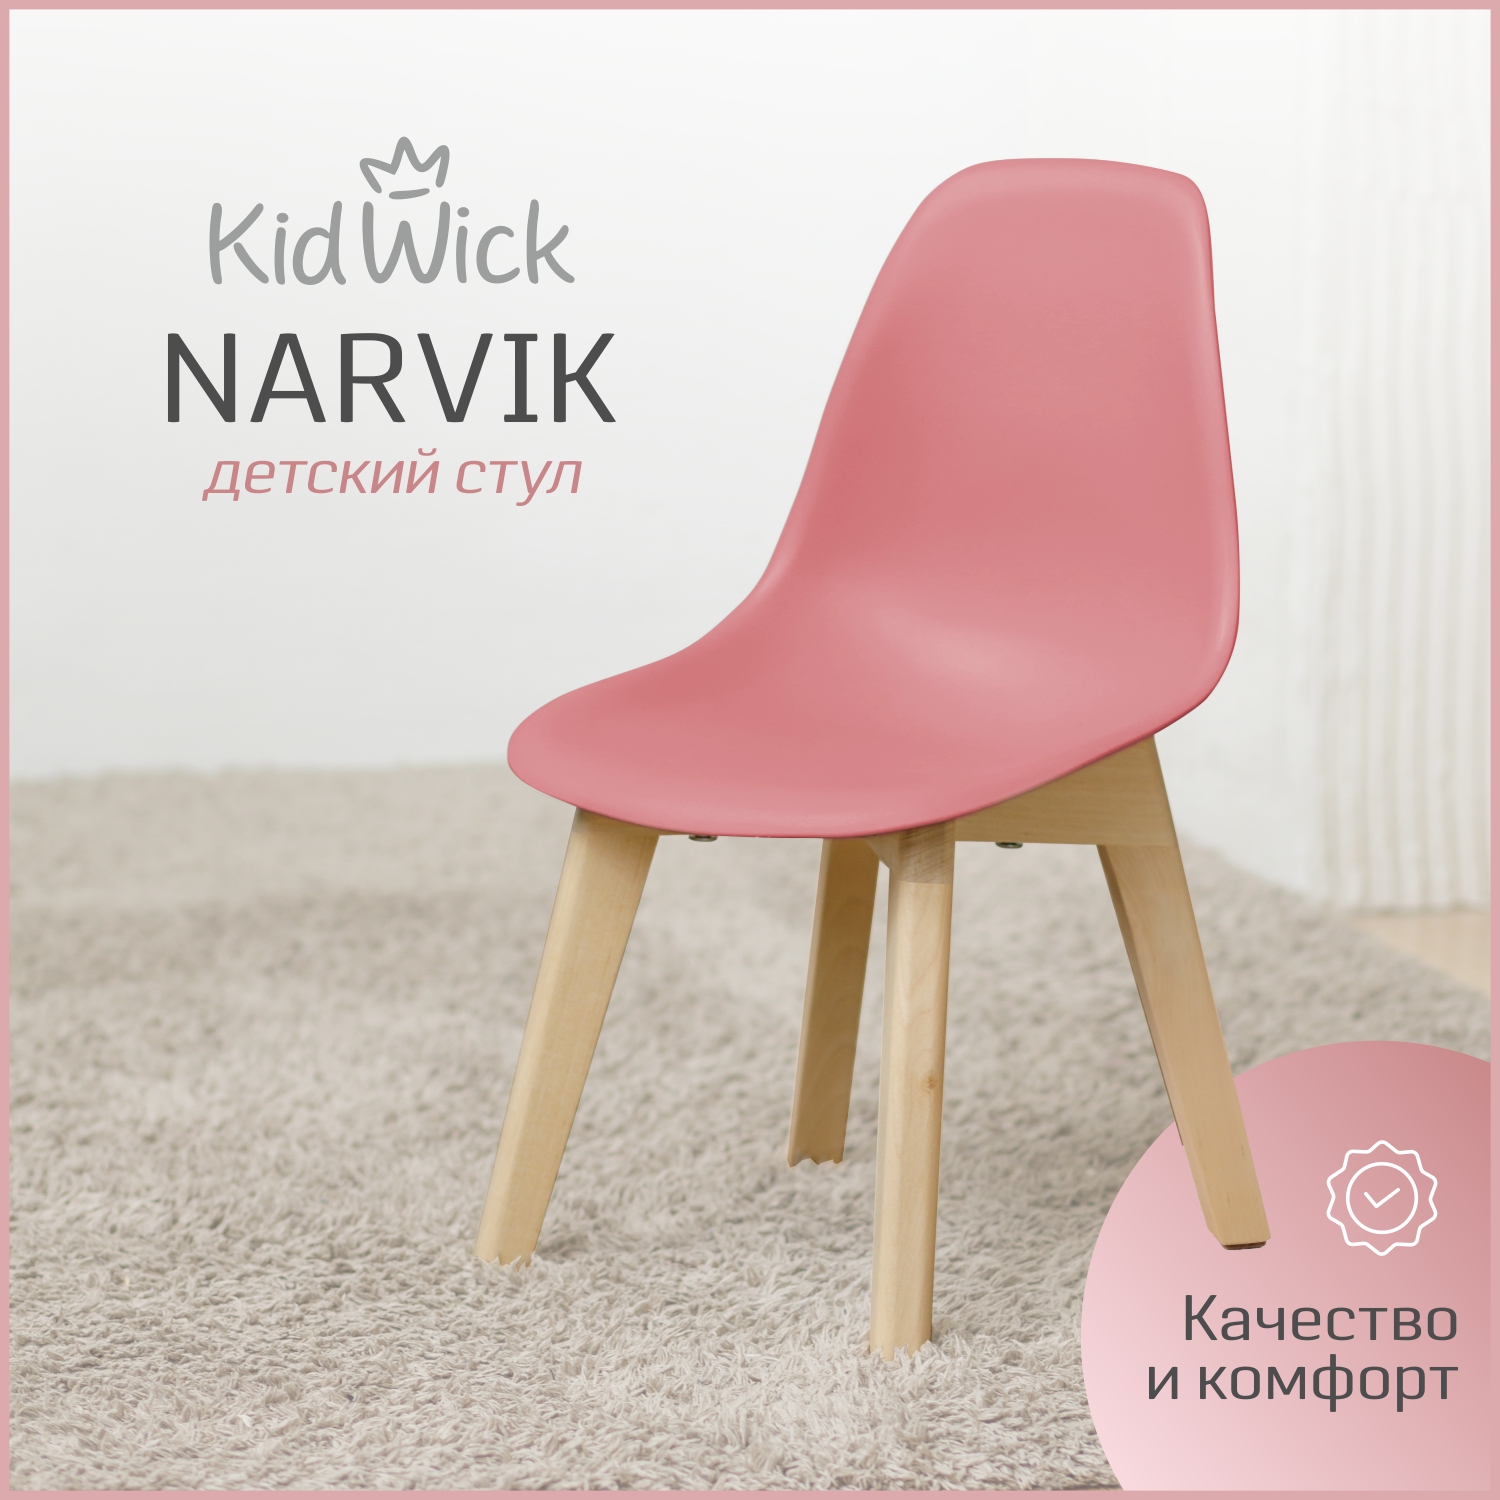 Стул детский Kidwick Narvik, розовый, 1 шт.